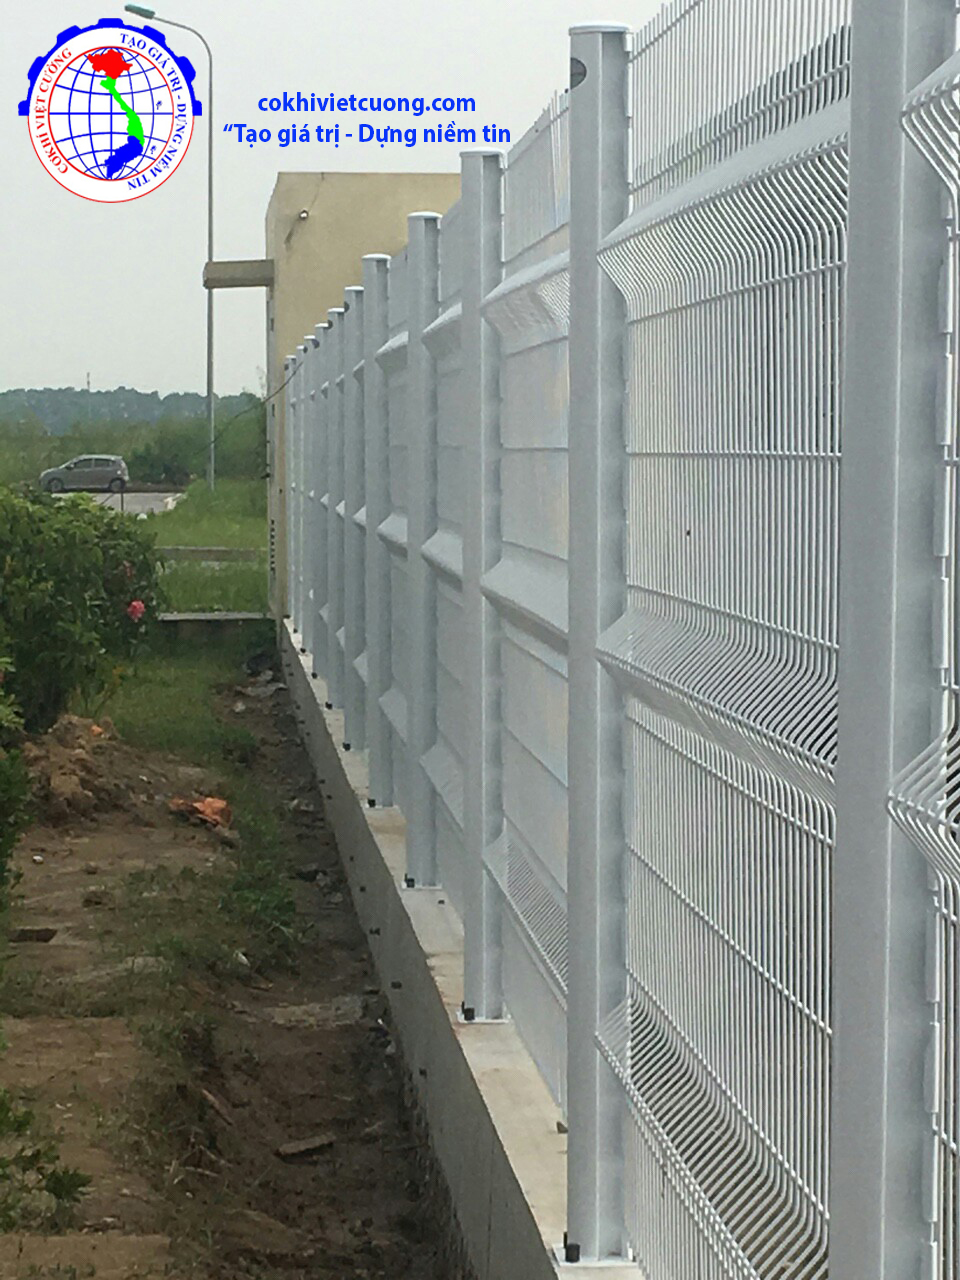 Hàng rào lưới thép tại Hà Nội - Cơ Khí Việt Cường - Tại xưởng sản xuất